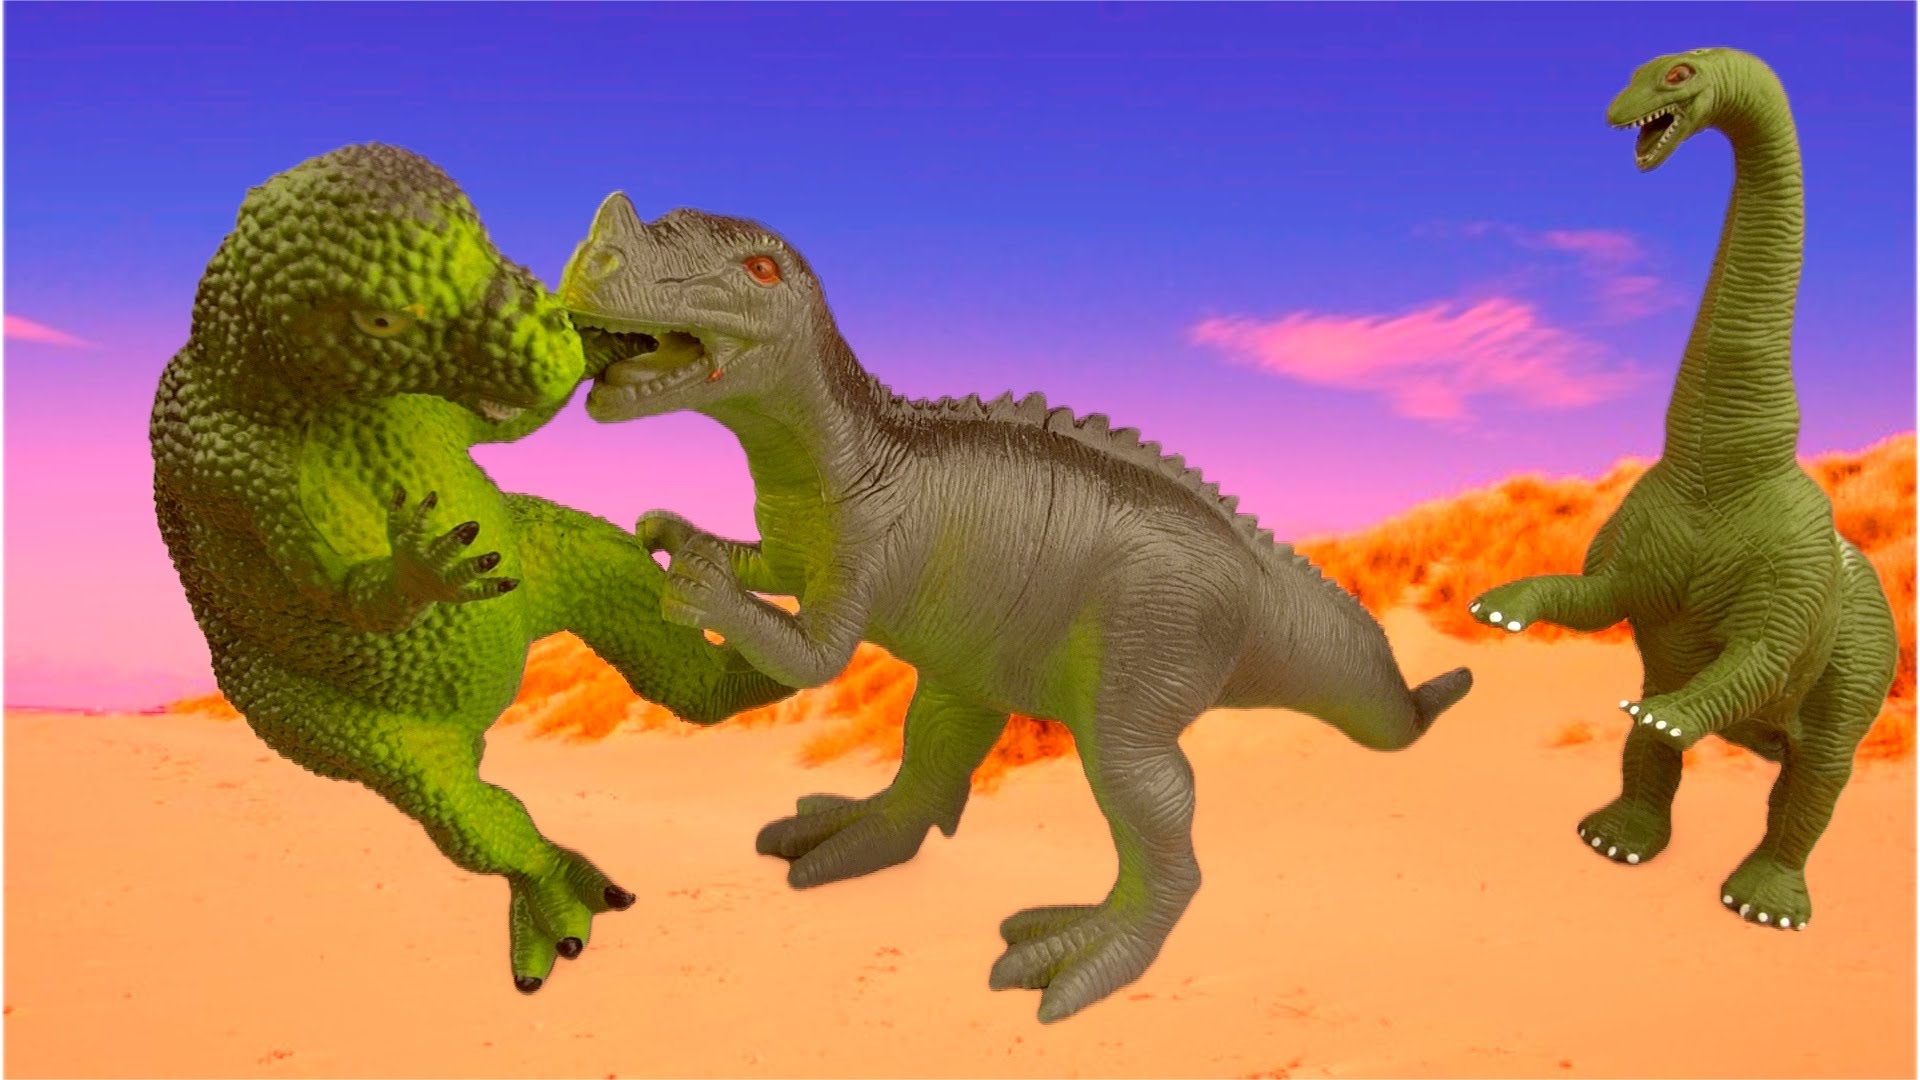 Dinosaur battle. Драка динозавров. Ориона динозавры. Динозавр пукает.